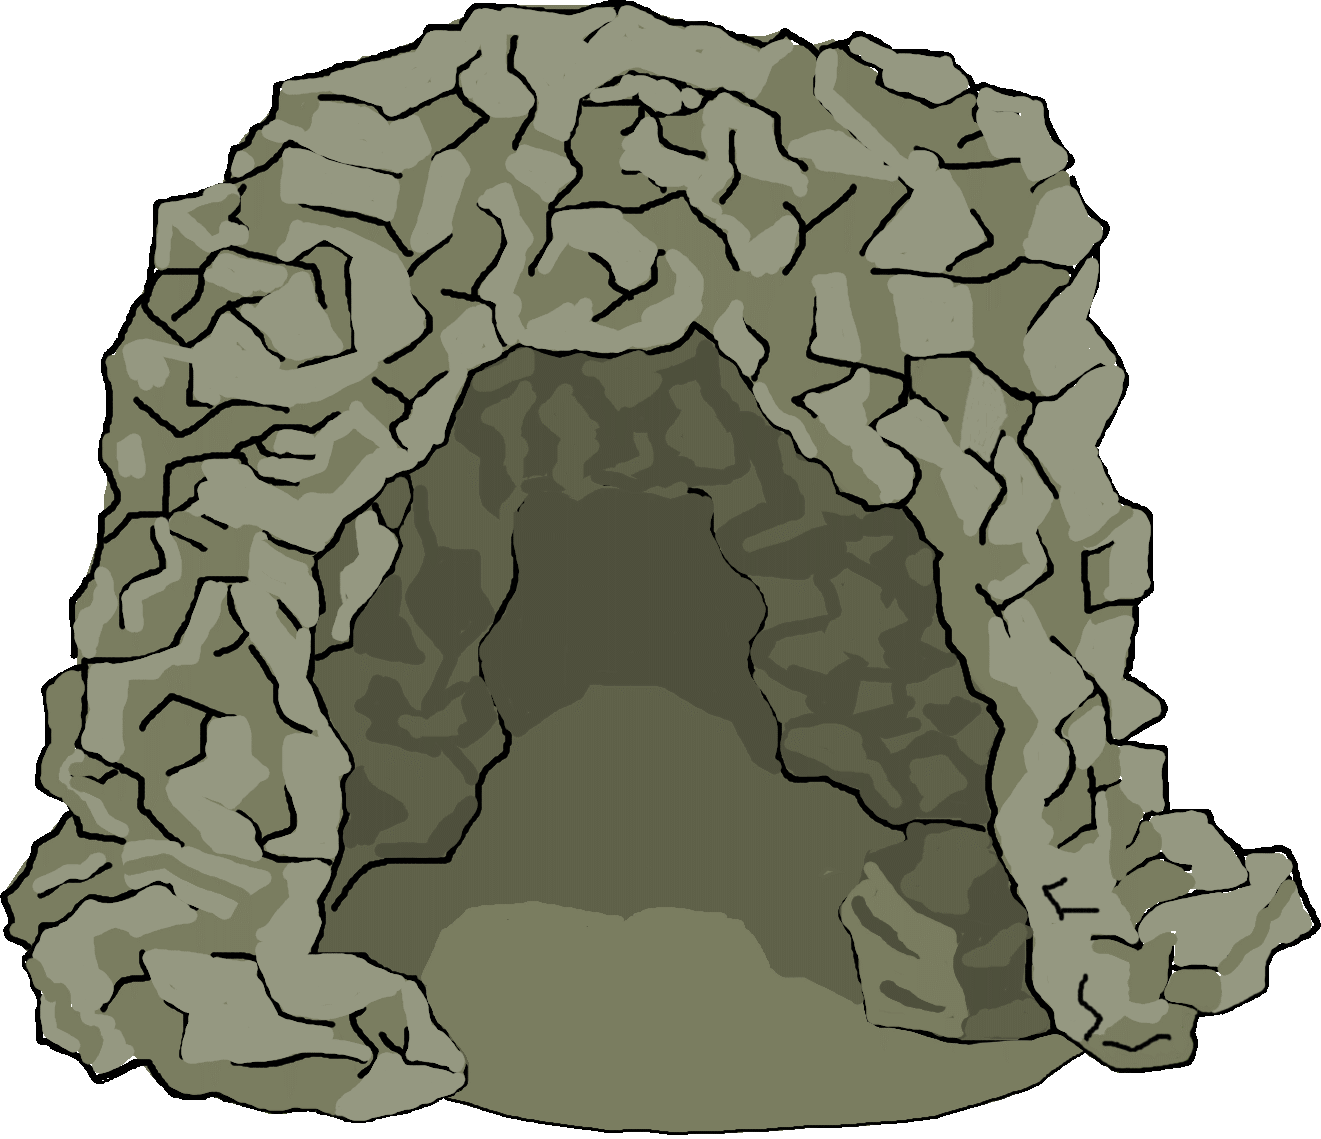 La grotte qui regorge de monstres et créatures fantastiques.